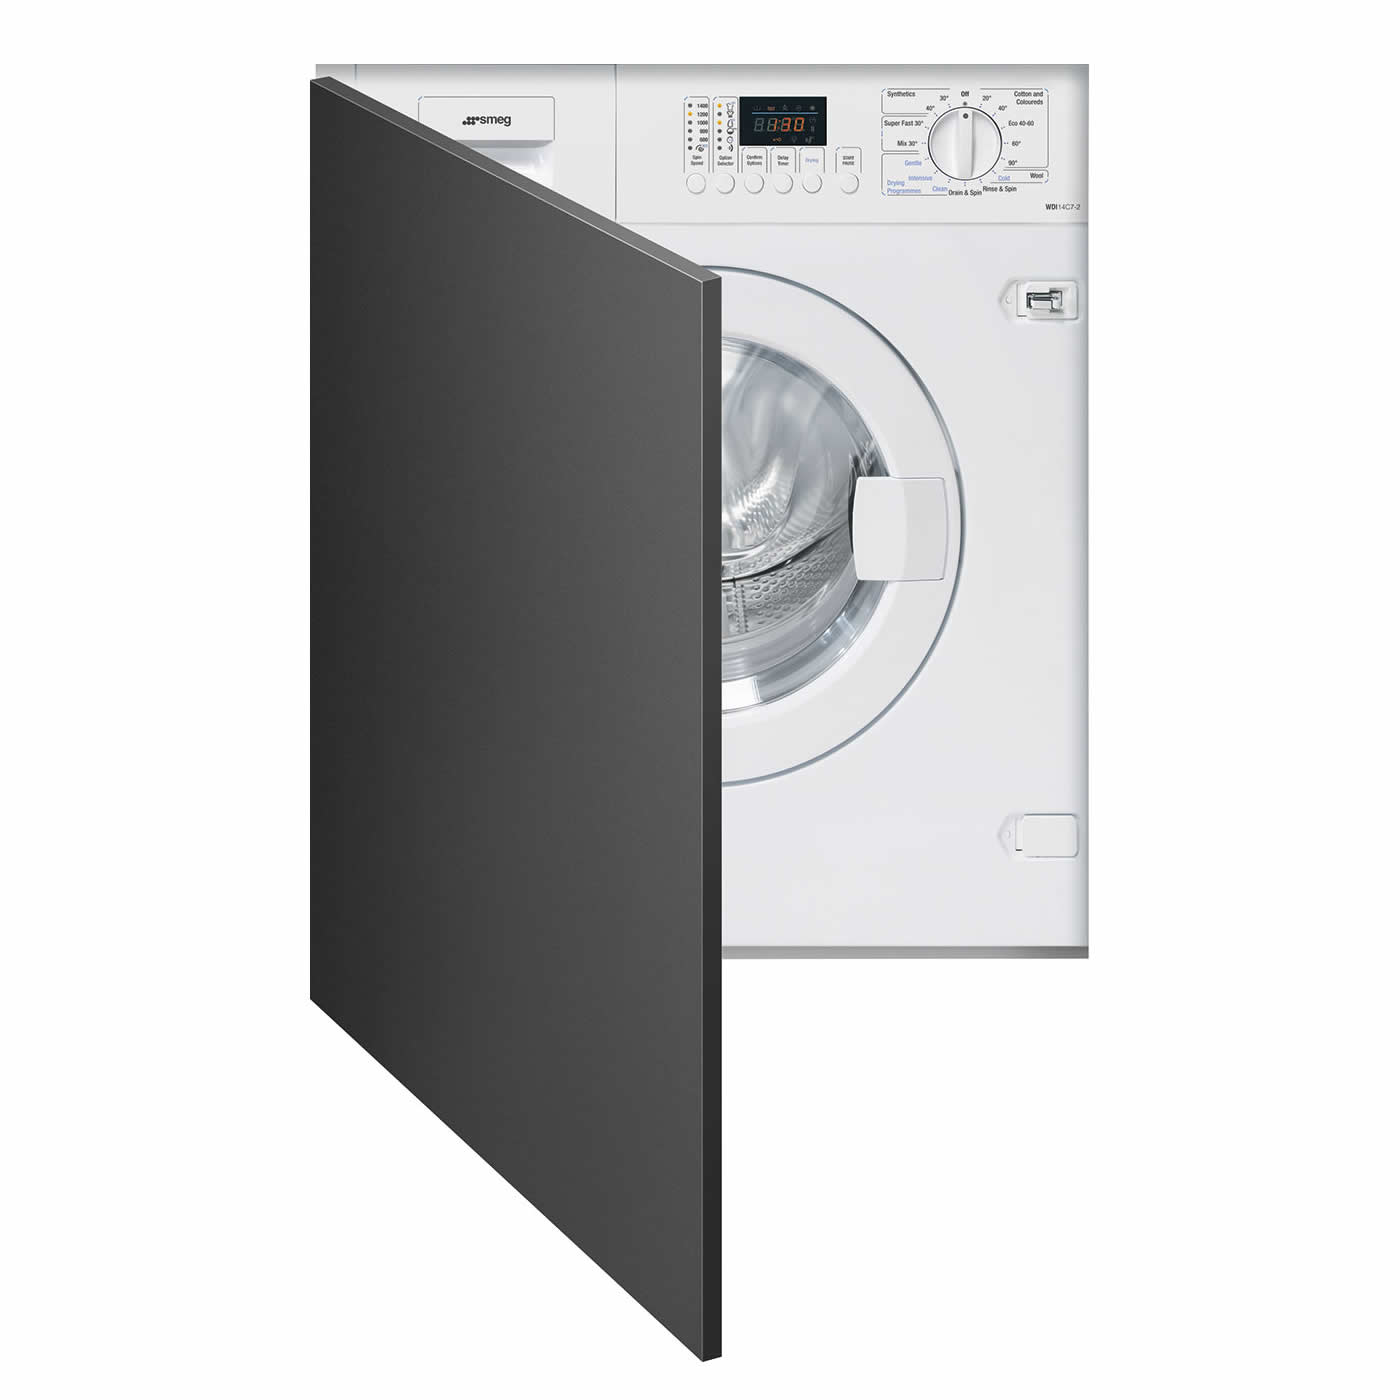 Smeg 1400rpm Integrated Washer Dryer 7kg/4kg Load White